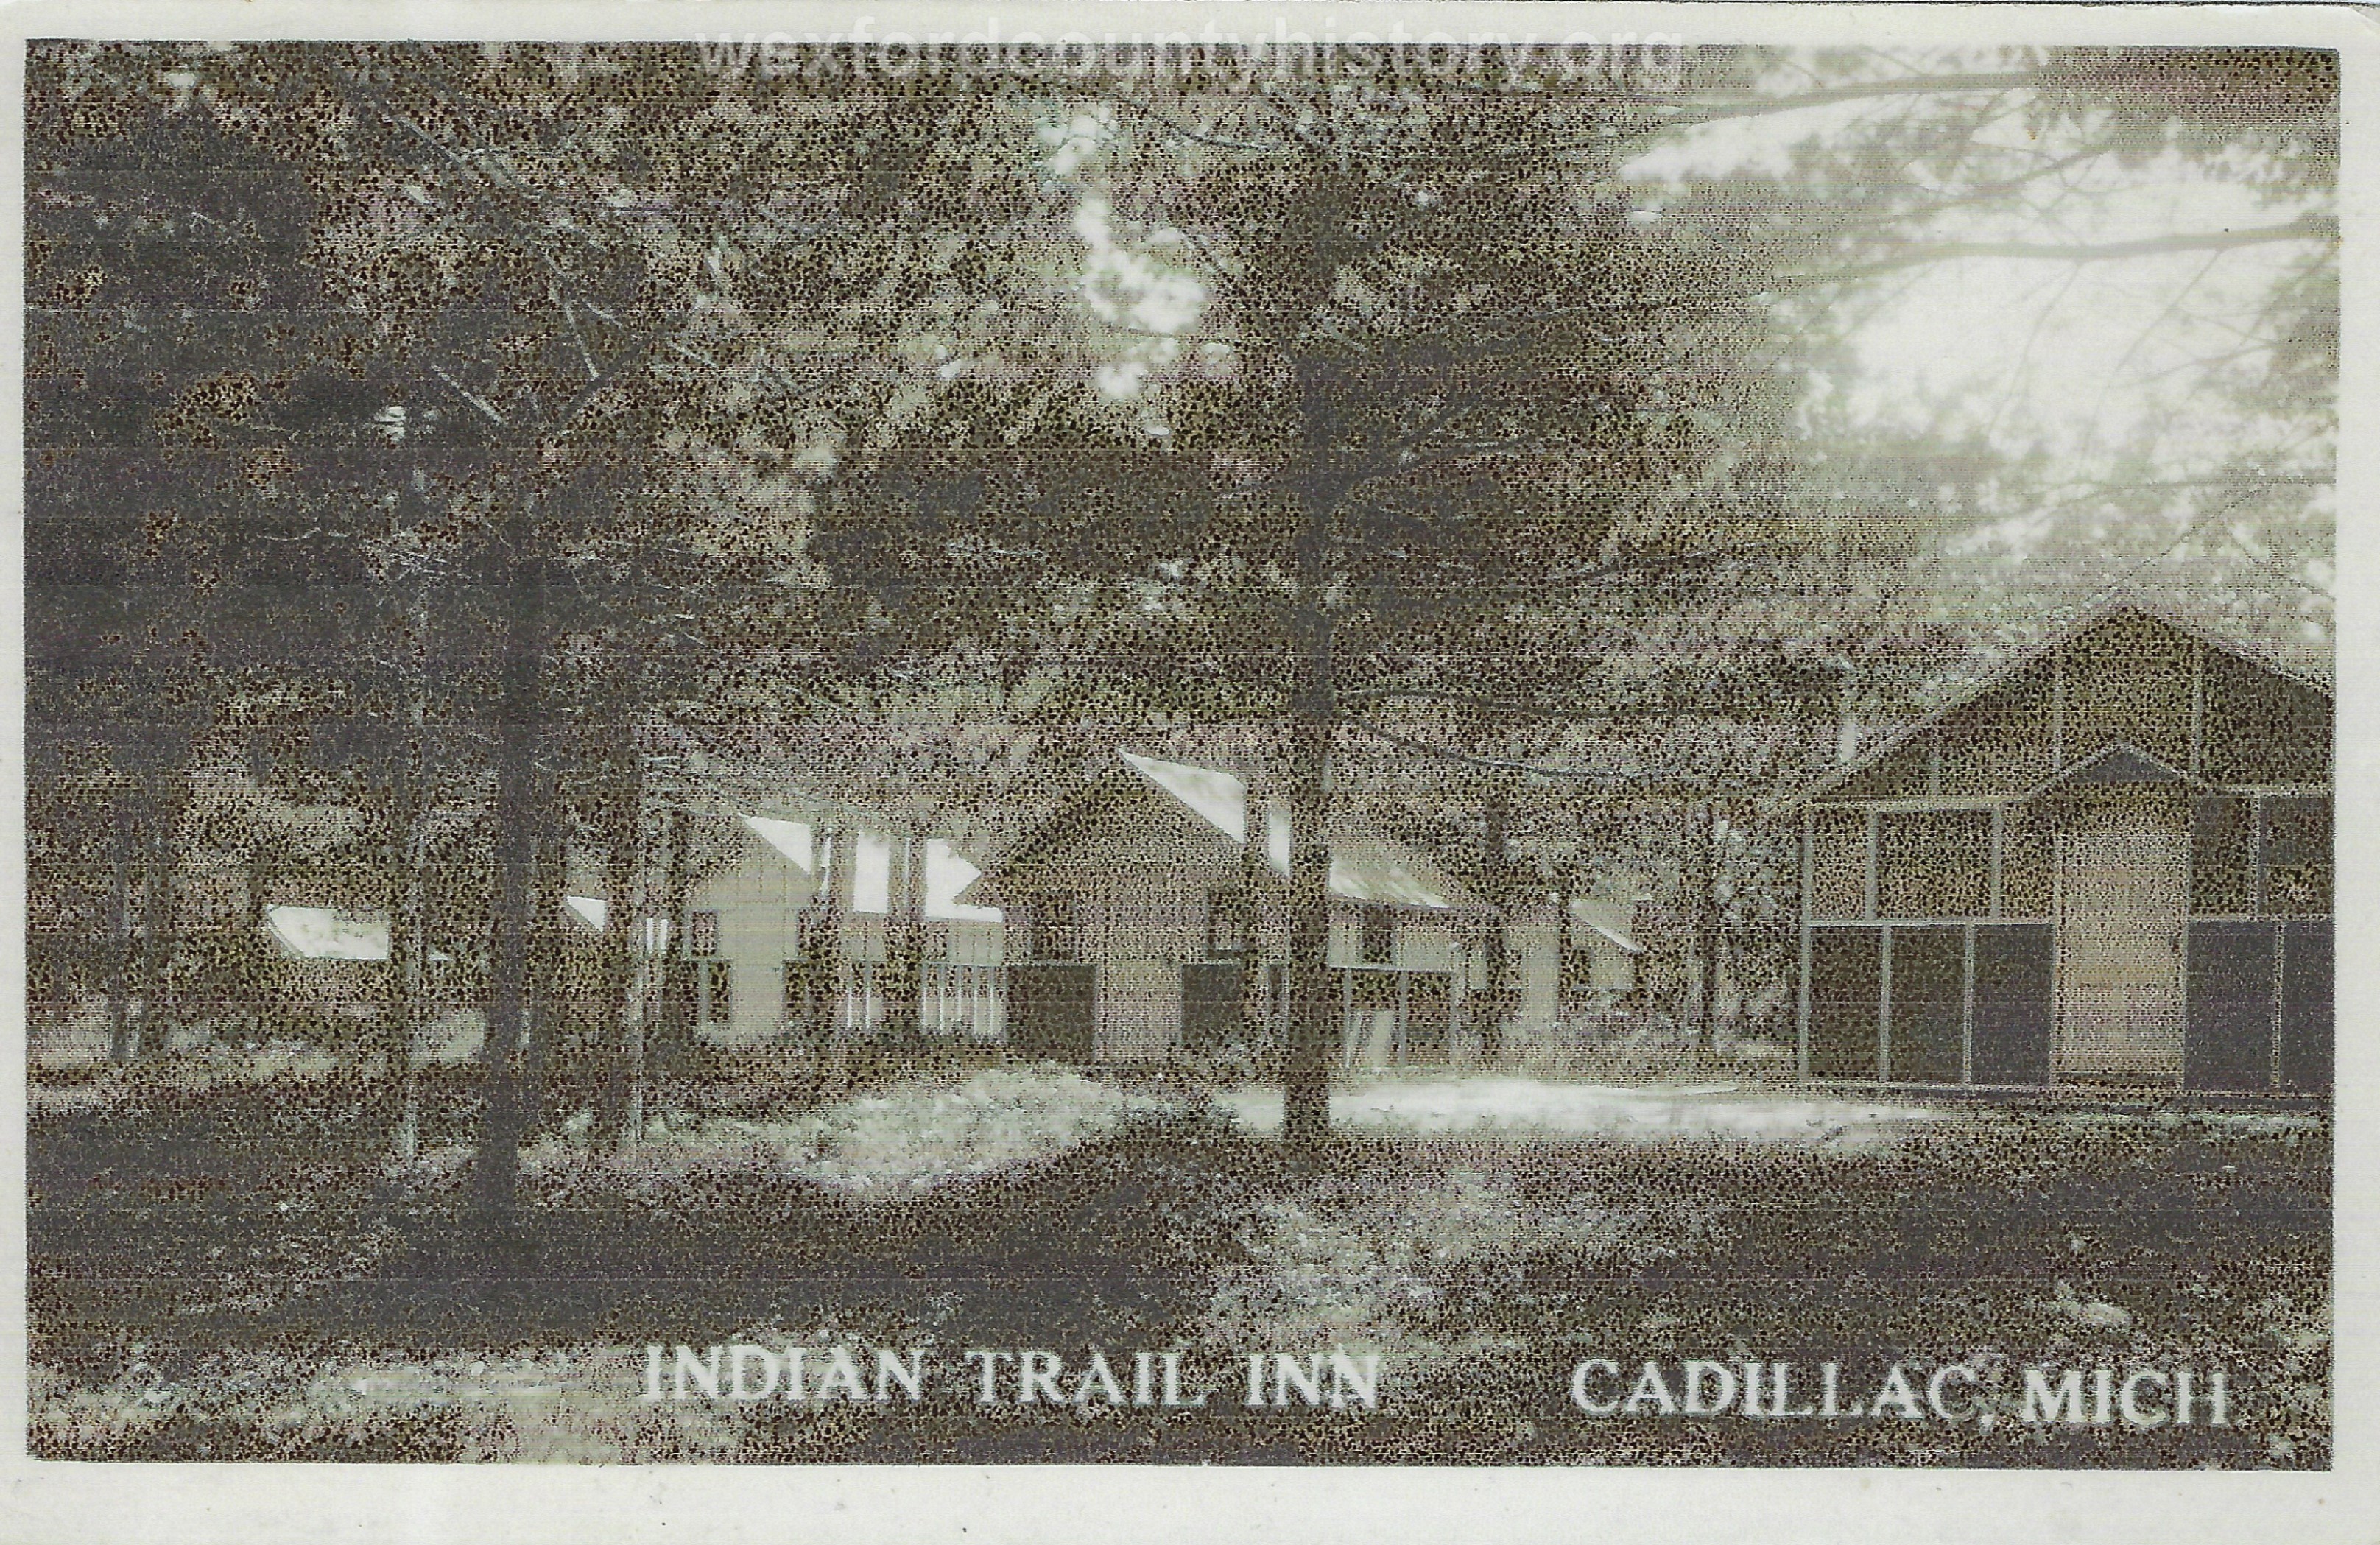 Indian Trail Inn